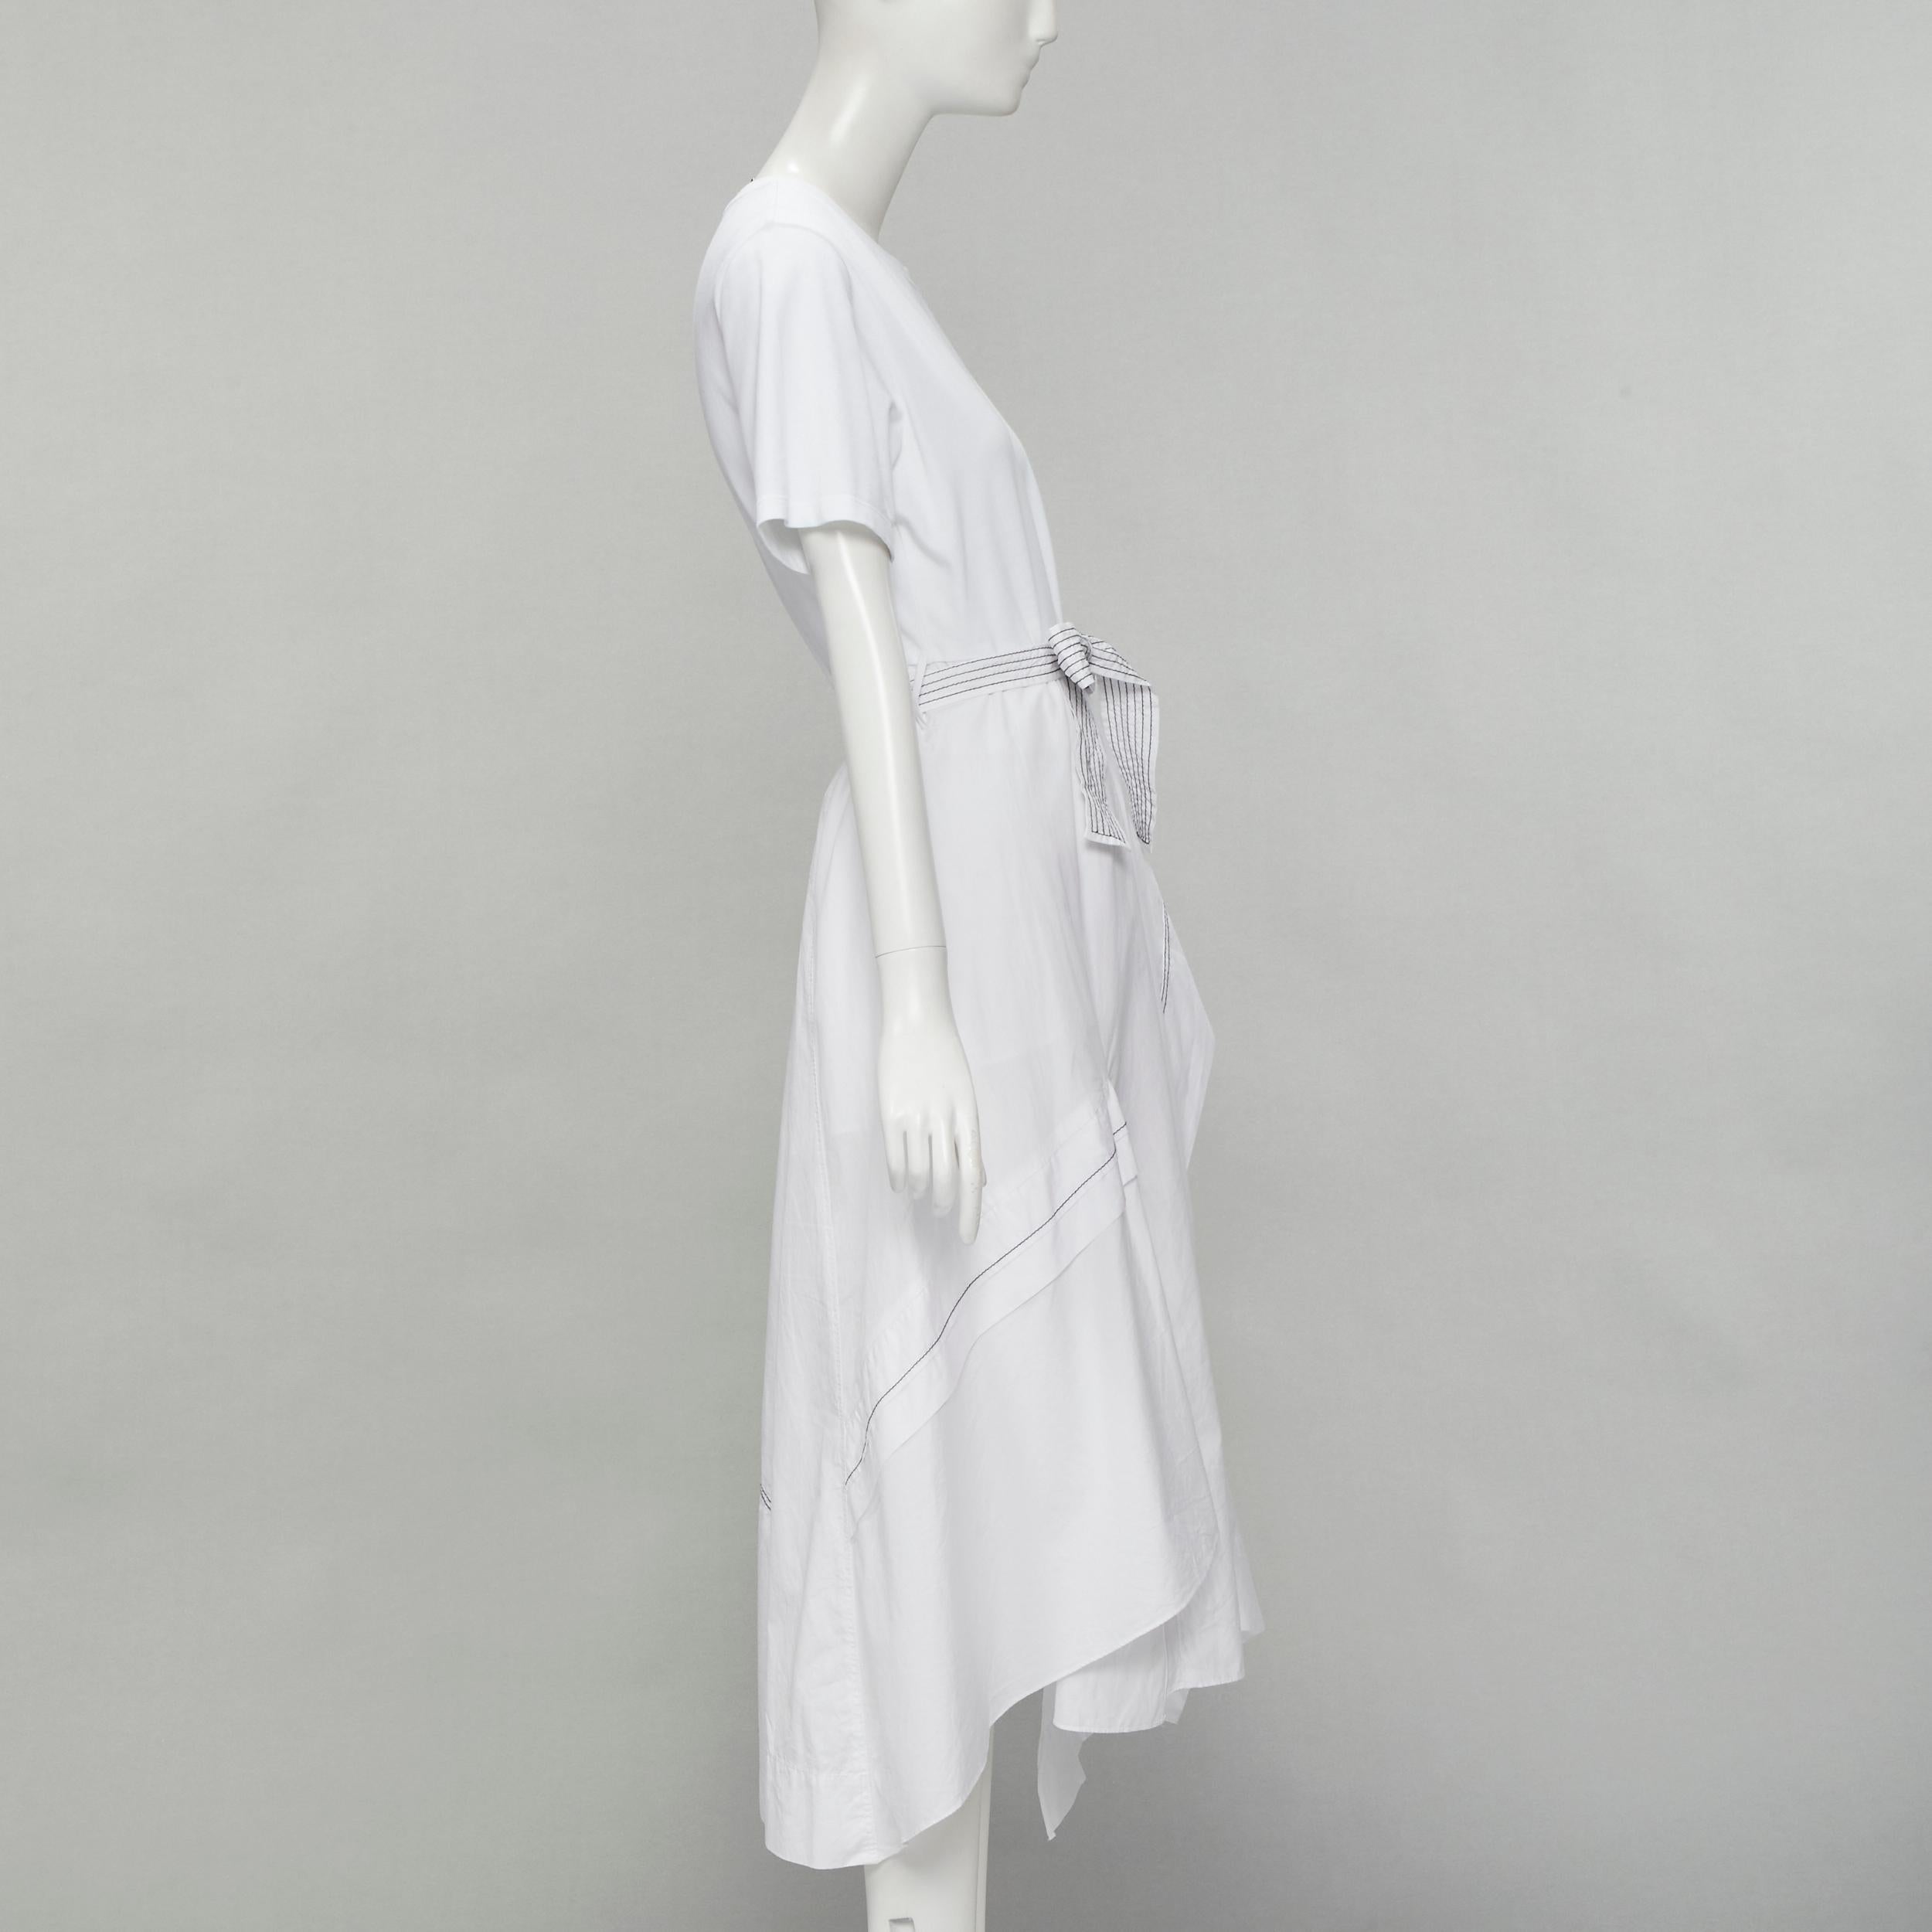 Women's 3.1 PHILLIP LIM white cotton tshirt overstitch detail belted dress US6 S